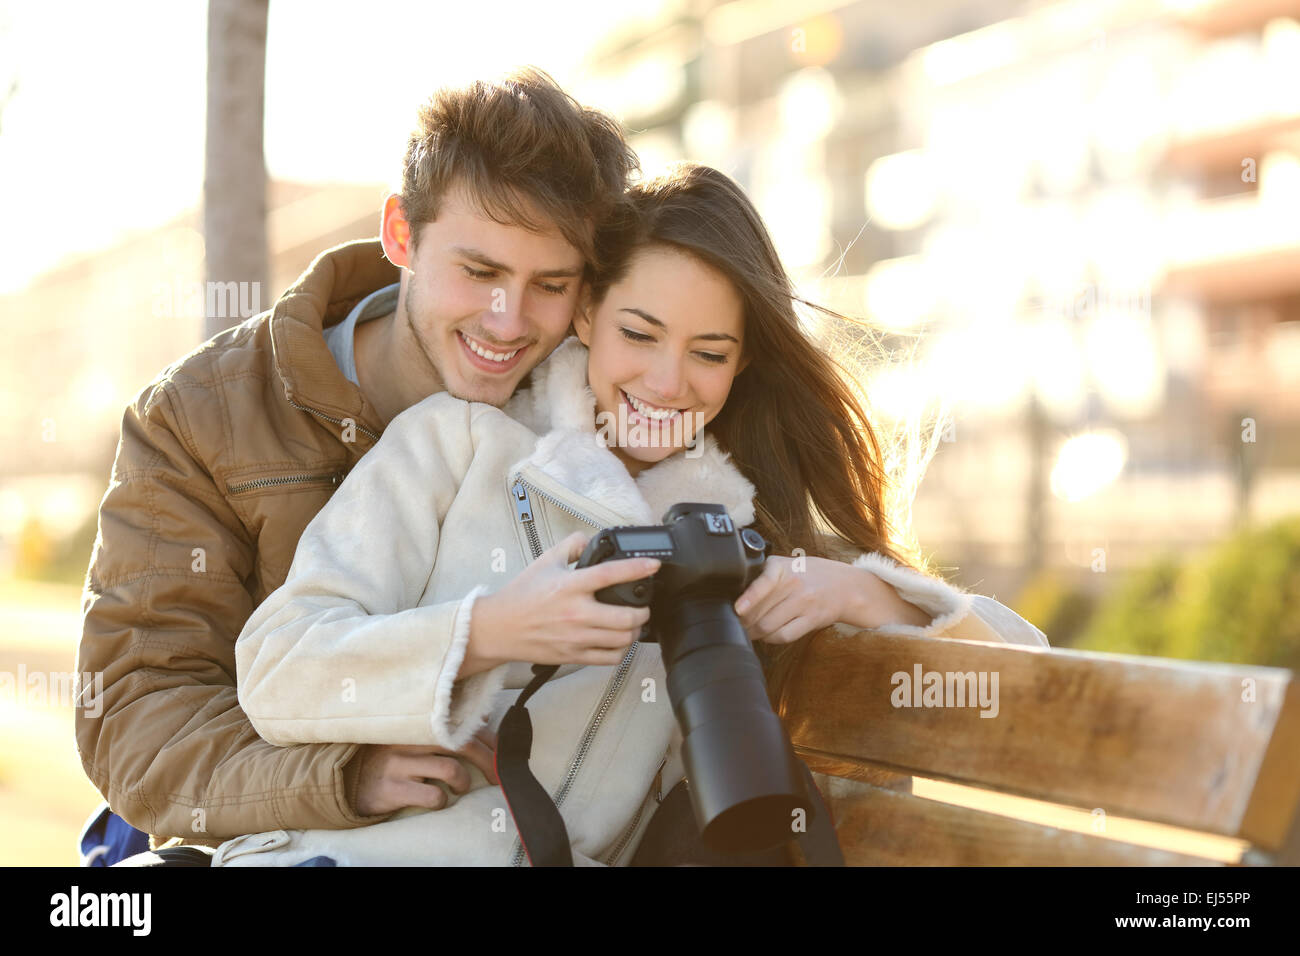 Paar Touristen, die Überprüfung der Fotos in einer Dslr-Kamera sitzt in einer Bank von einem Park mit einem städtischen Hintergrund Stockfoto